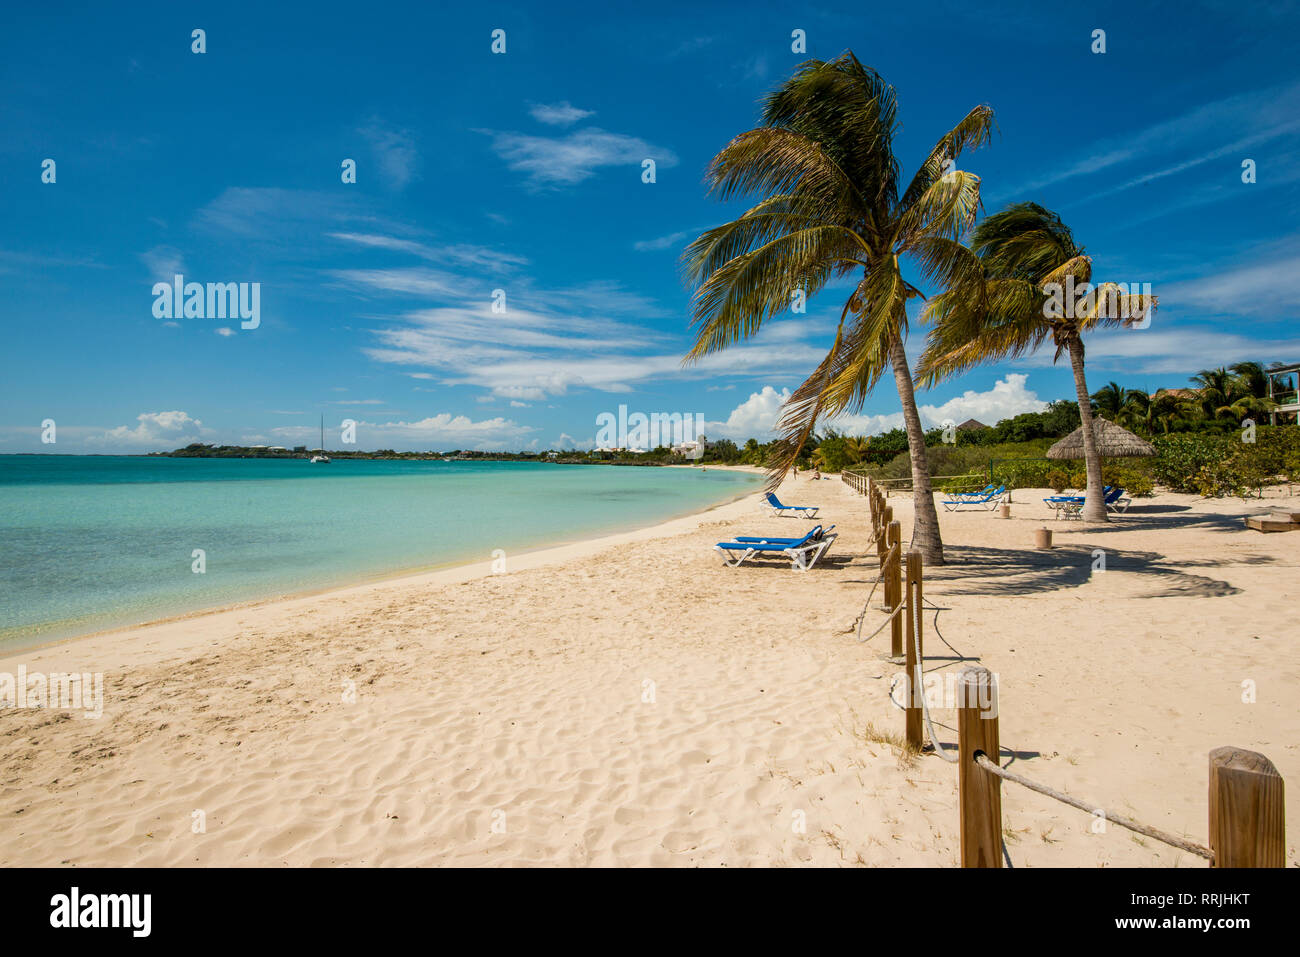 La playa de la Bahía de níspero, Providenciales, Islas Turcas y Caicos, Antillas, América Central Foto de stock